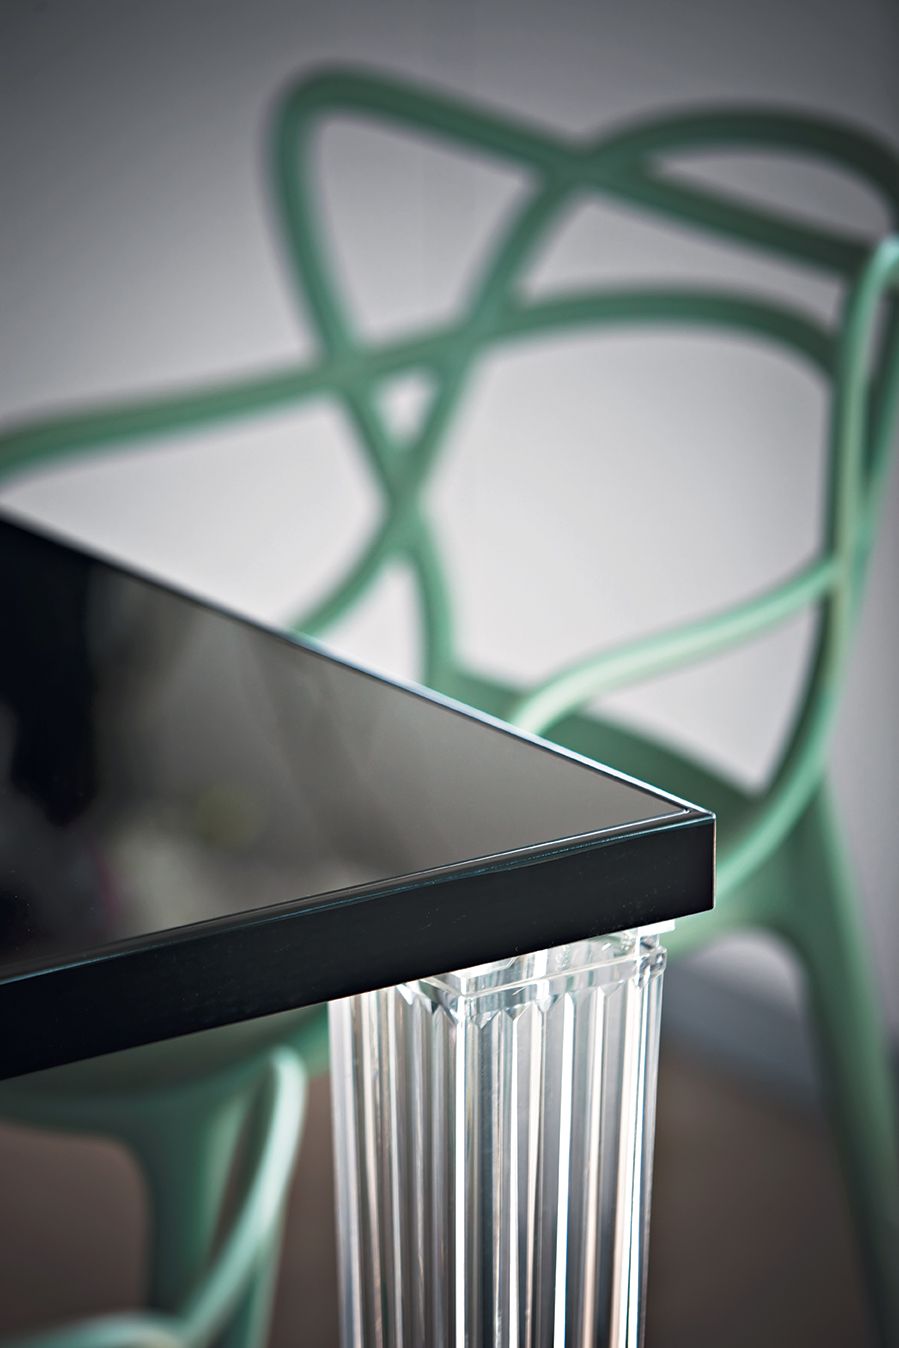 Kartell Top -pöydän lasi 190x90 cm, musta